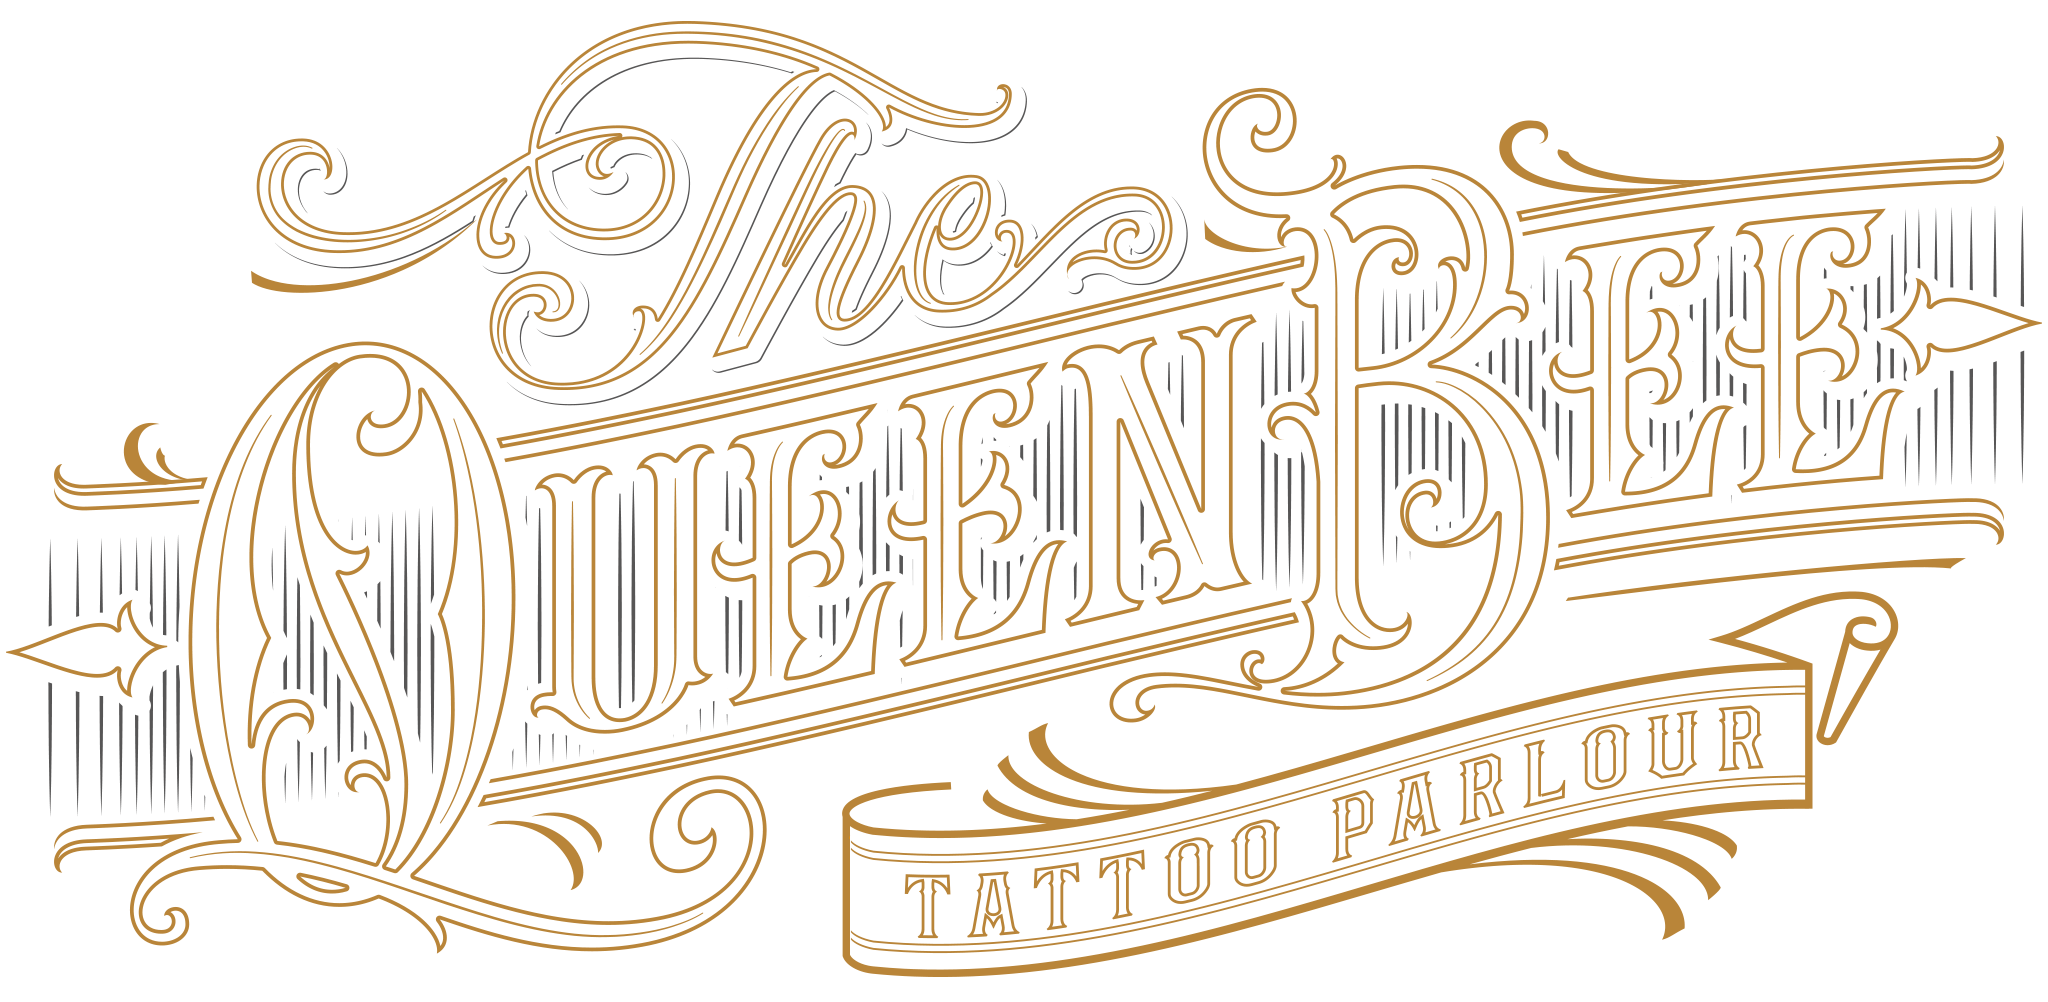 Queen bee tattoo and piercing studio